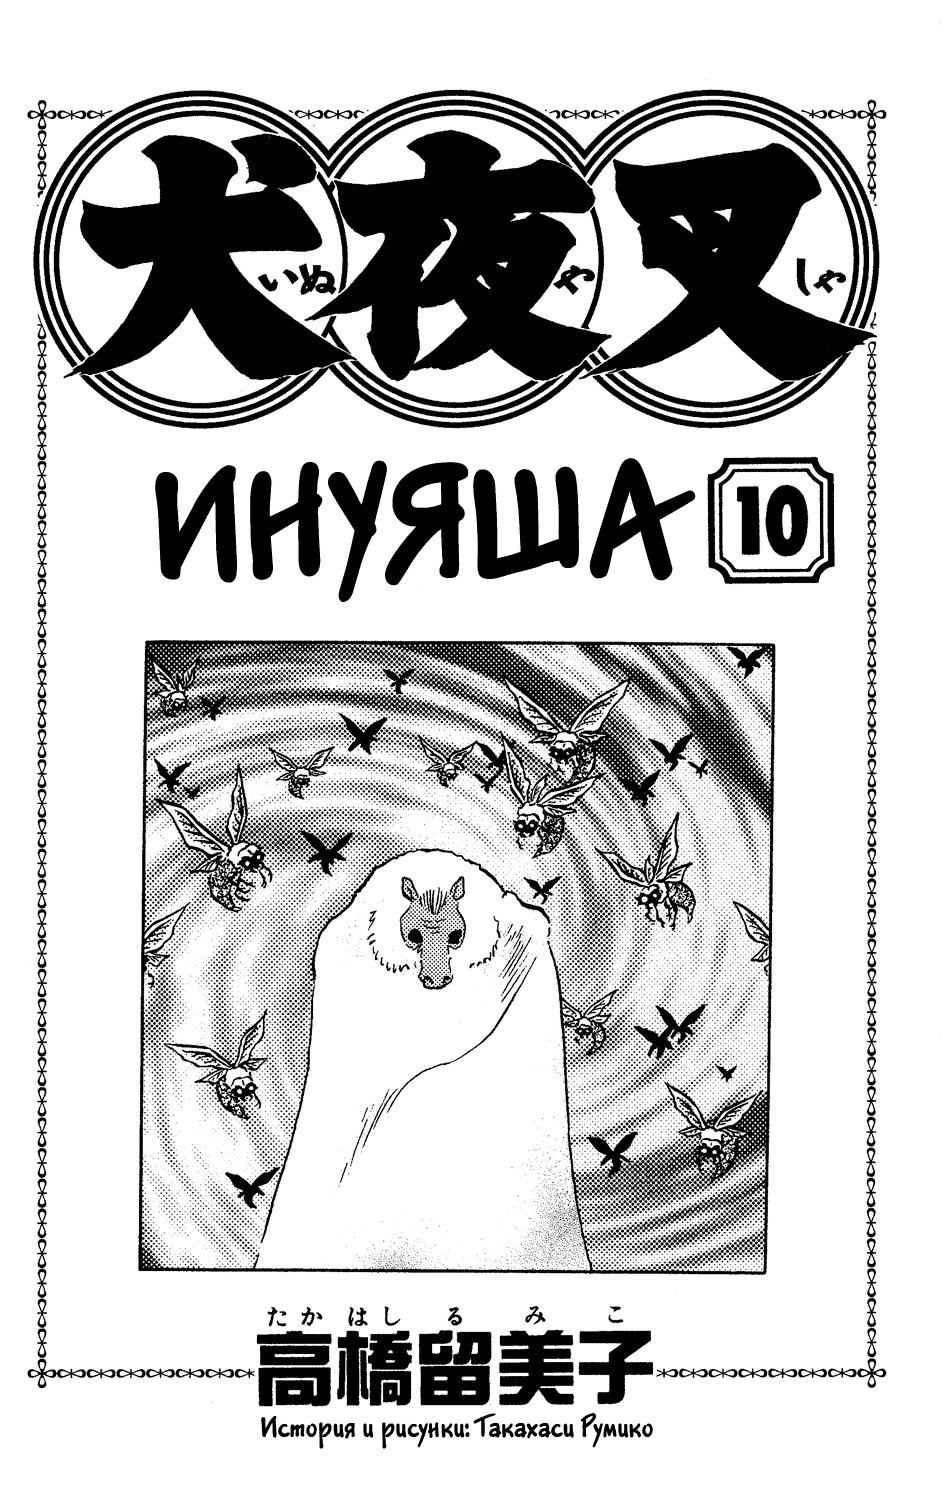 Инуяша 10 - 89 мумия